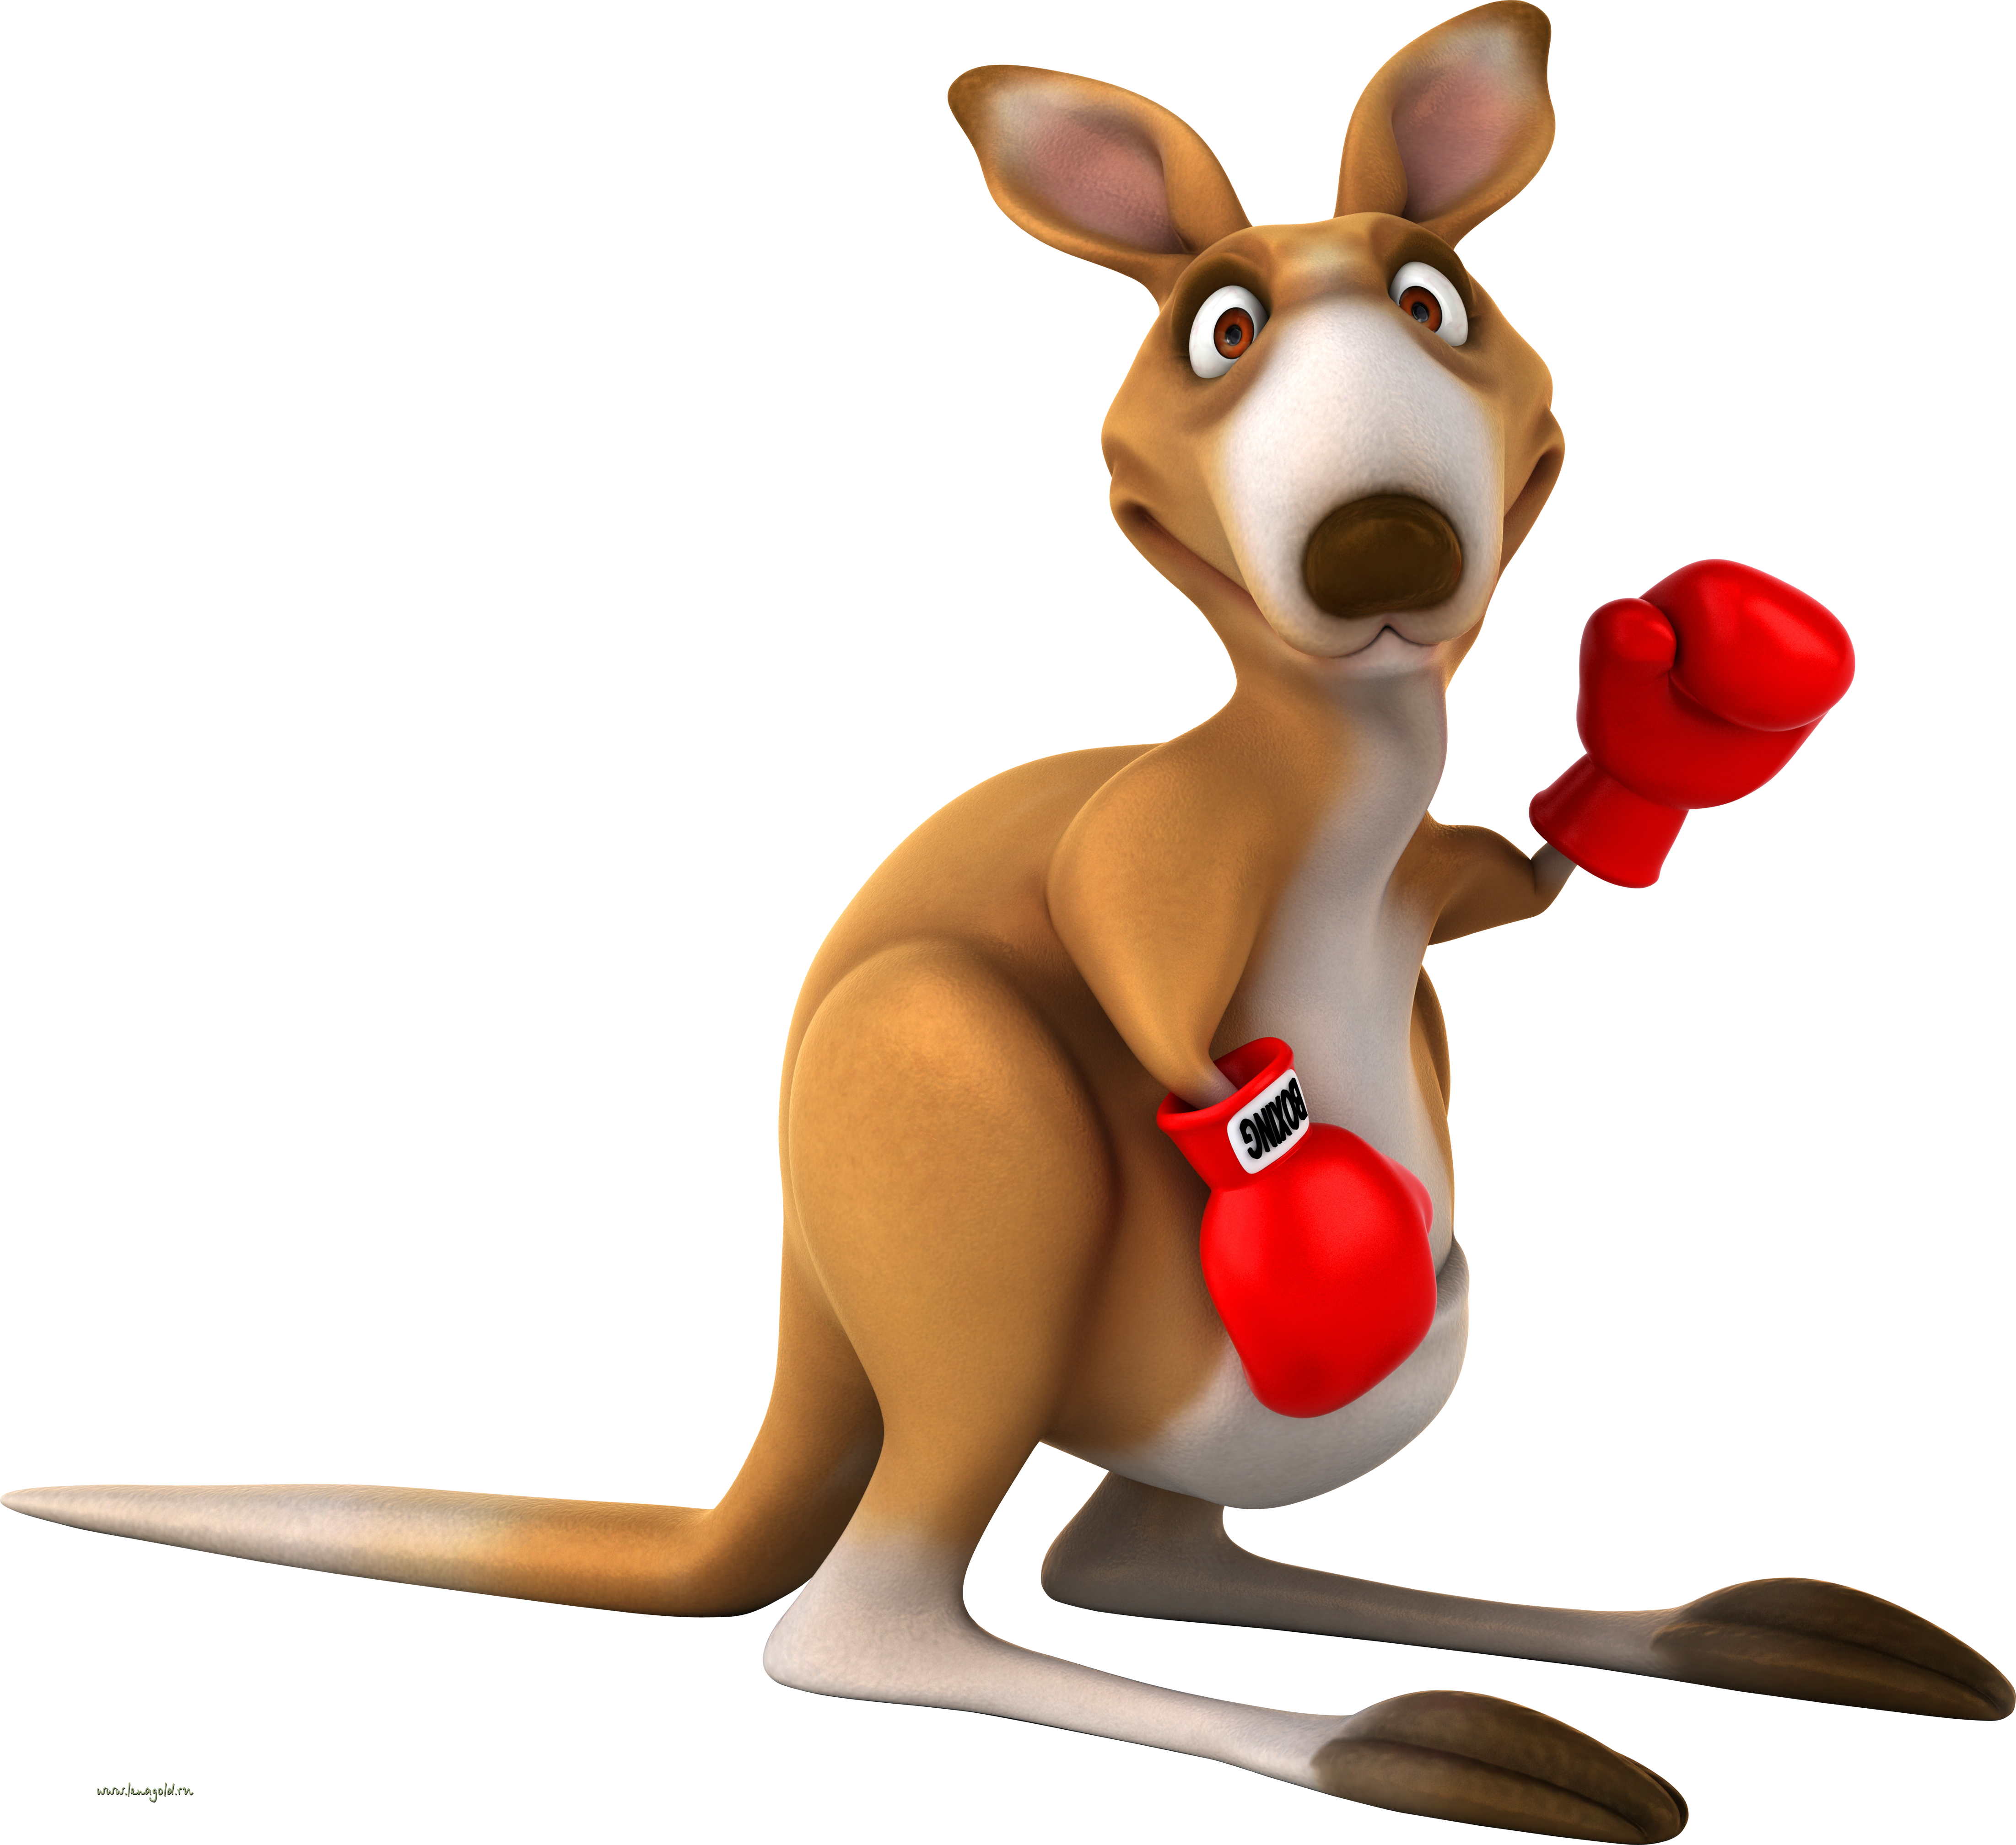 Kangaroo  PNG